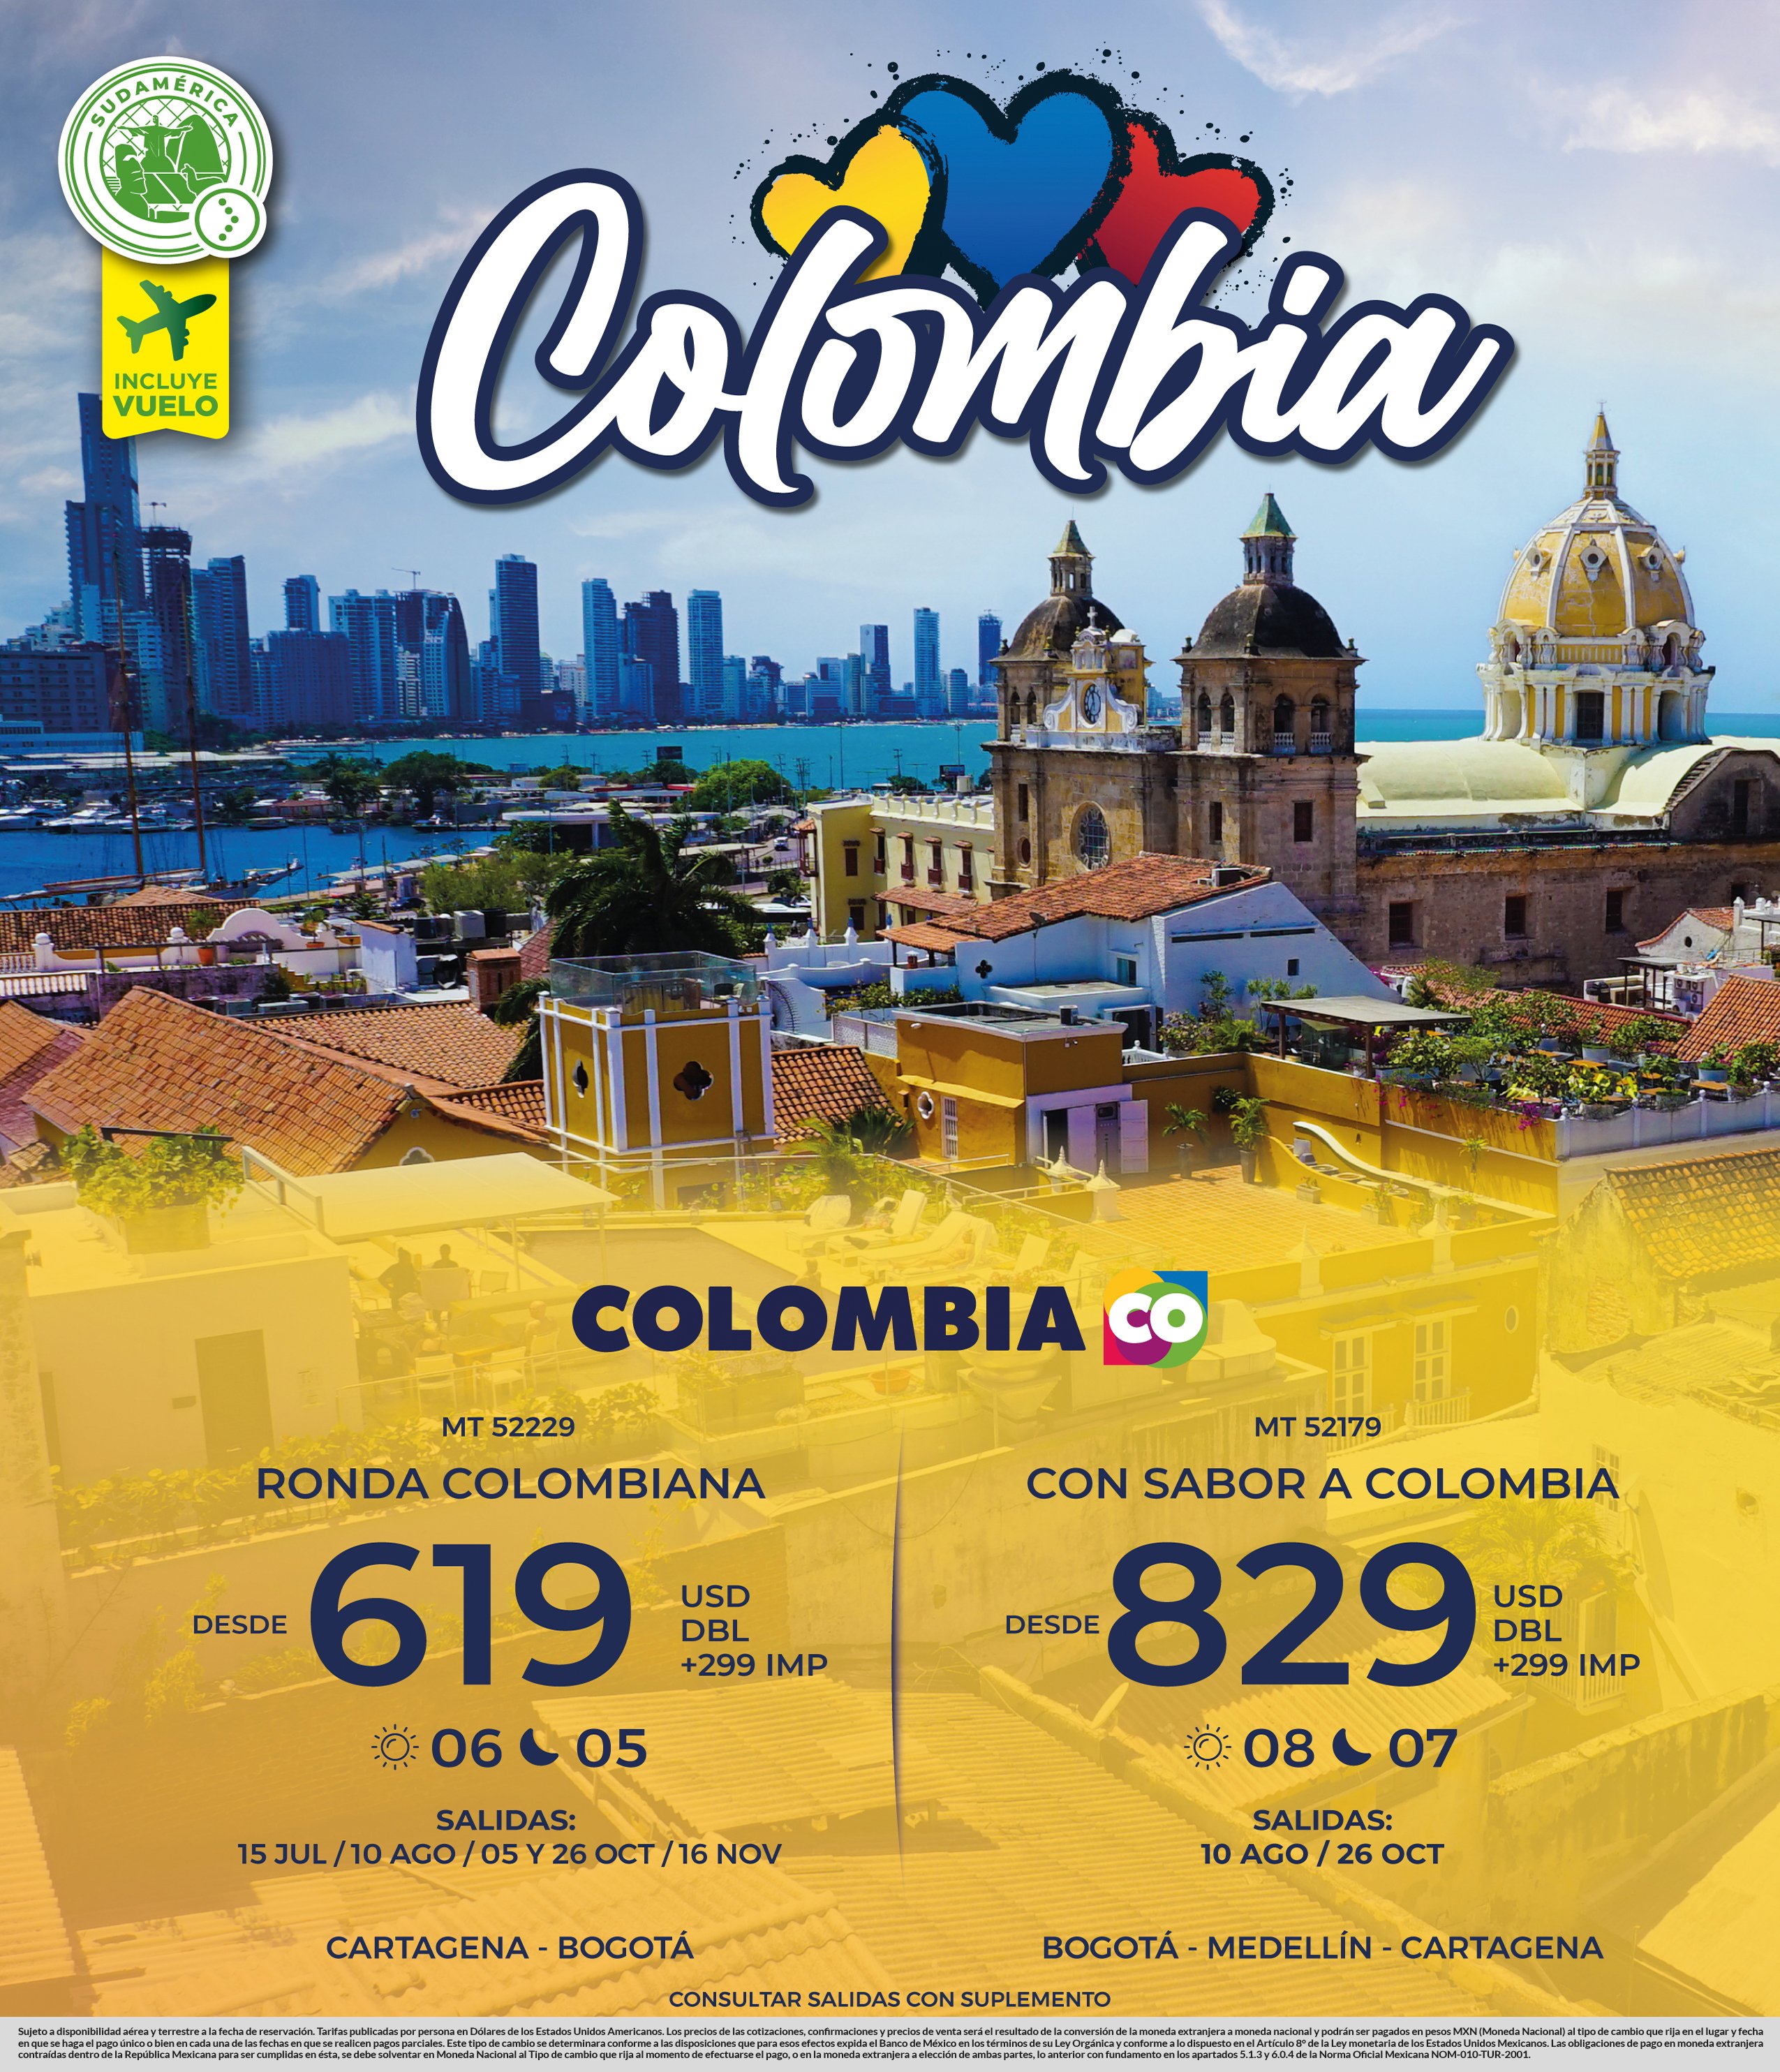 https://0201.nccdn.net/1_2/000/000/146/e5c/colombia-2p-sudamerica.jpg